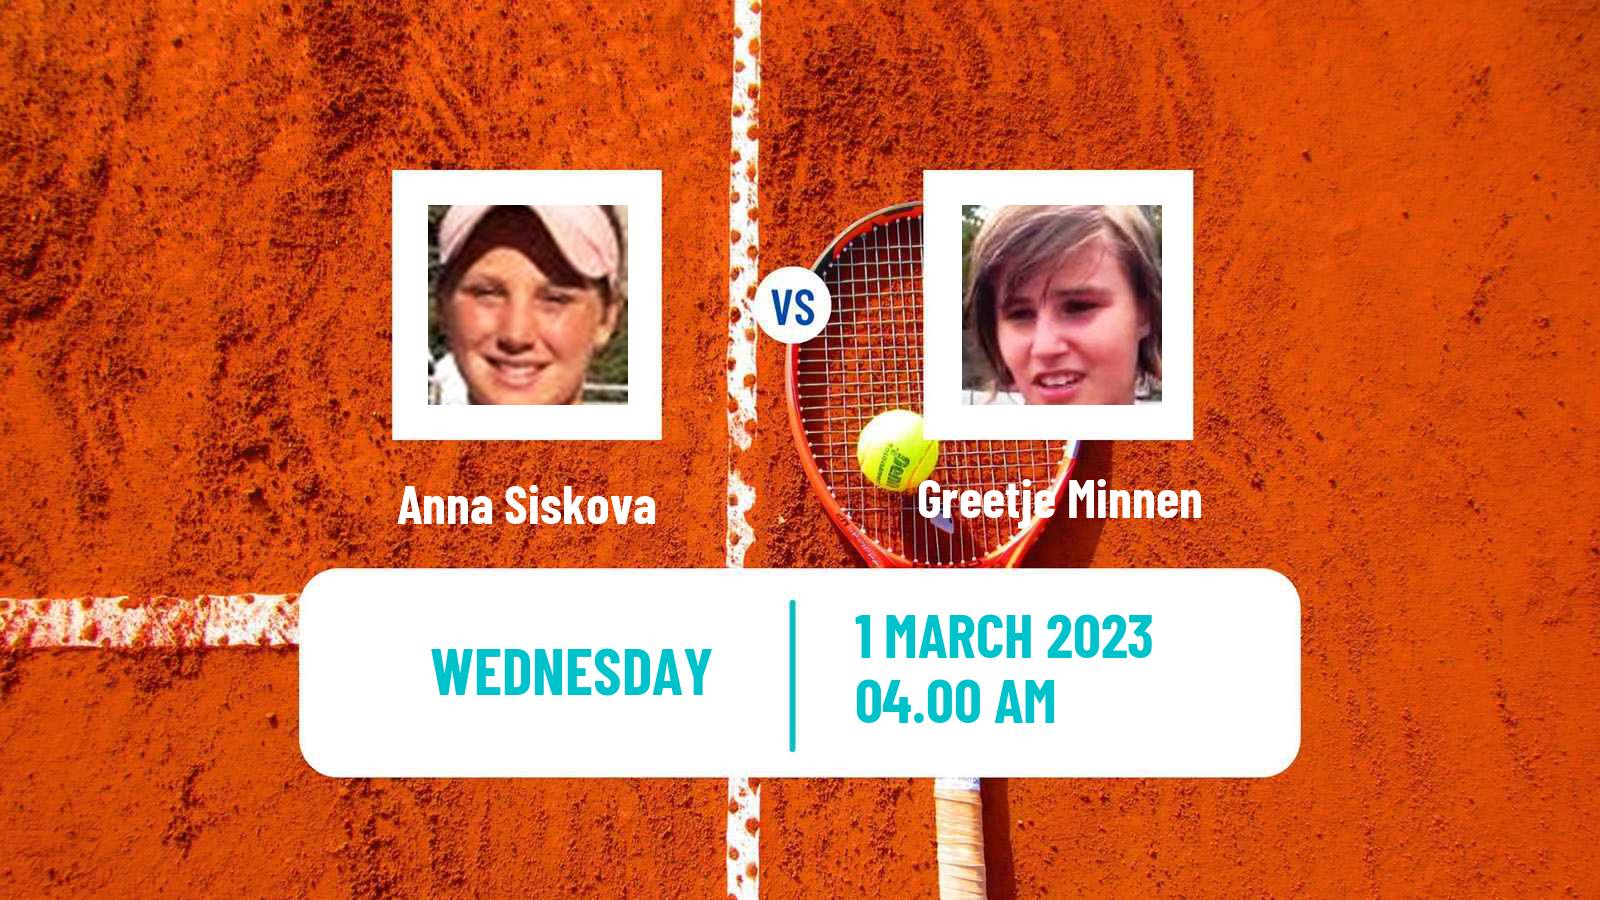 Tennis ITF Tournaments Anna Siskova - Greetje Minnen